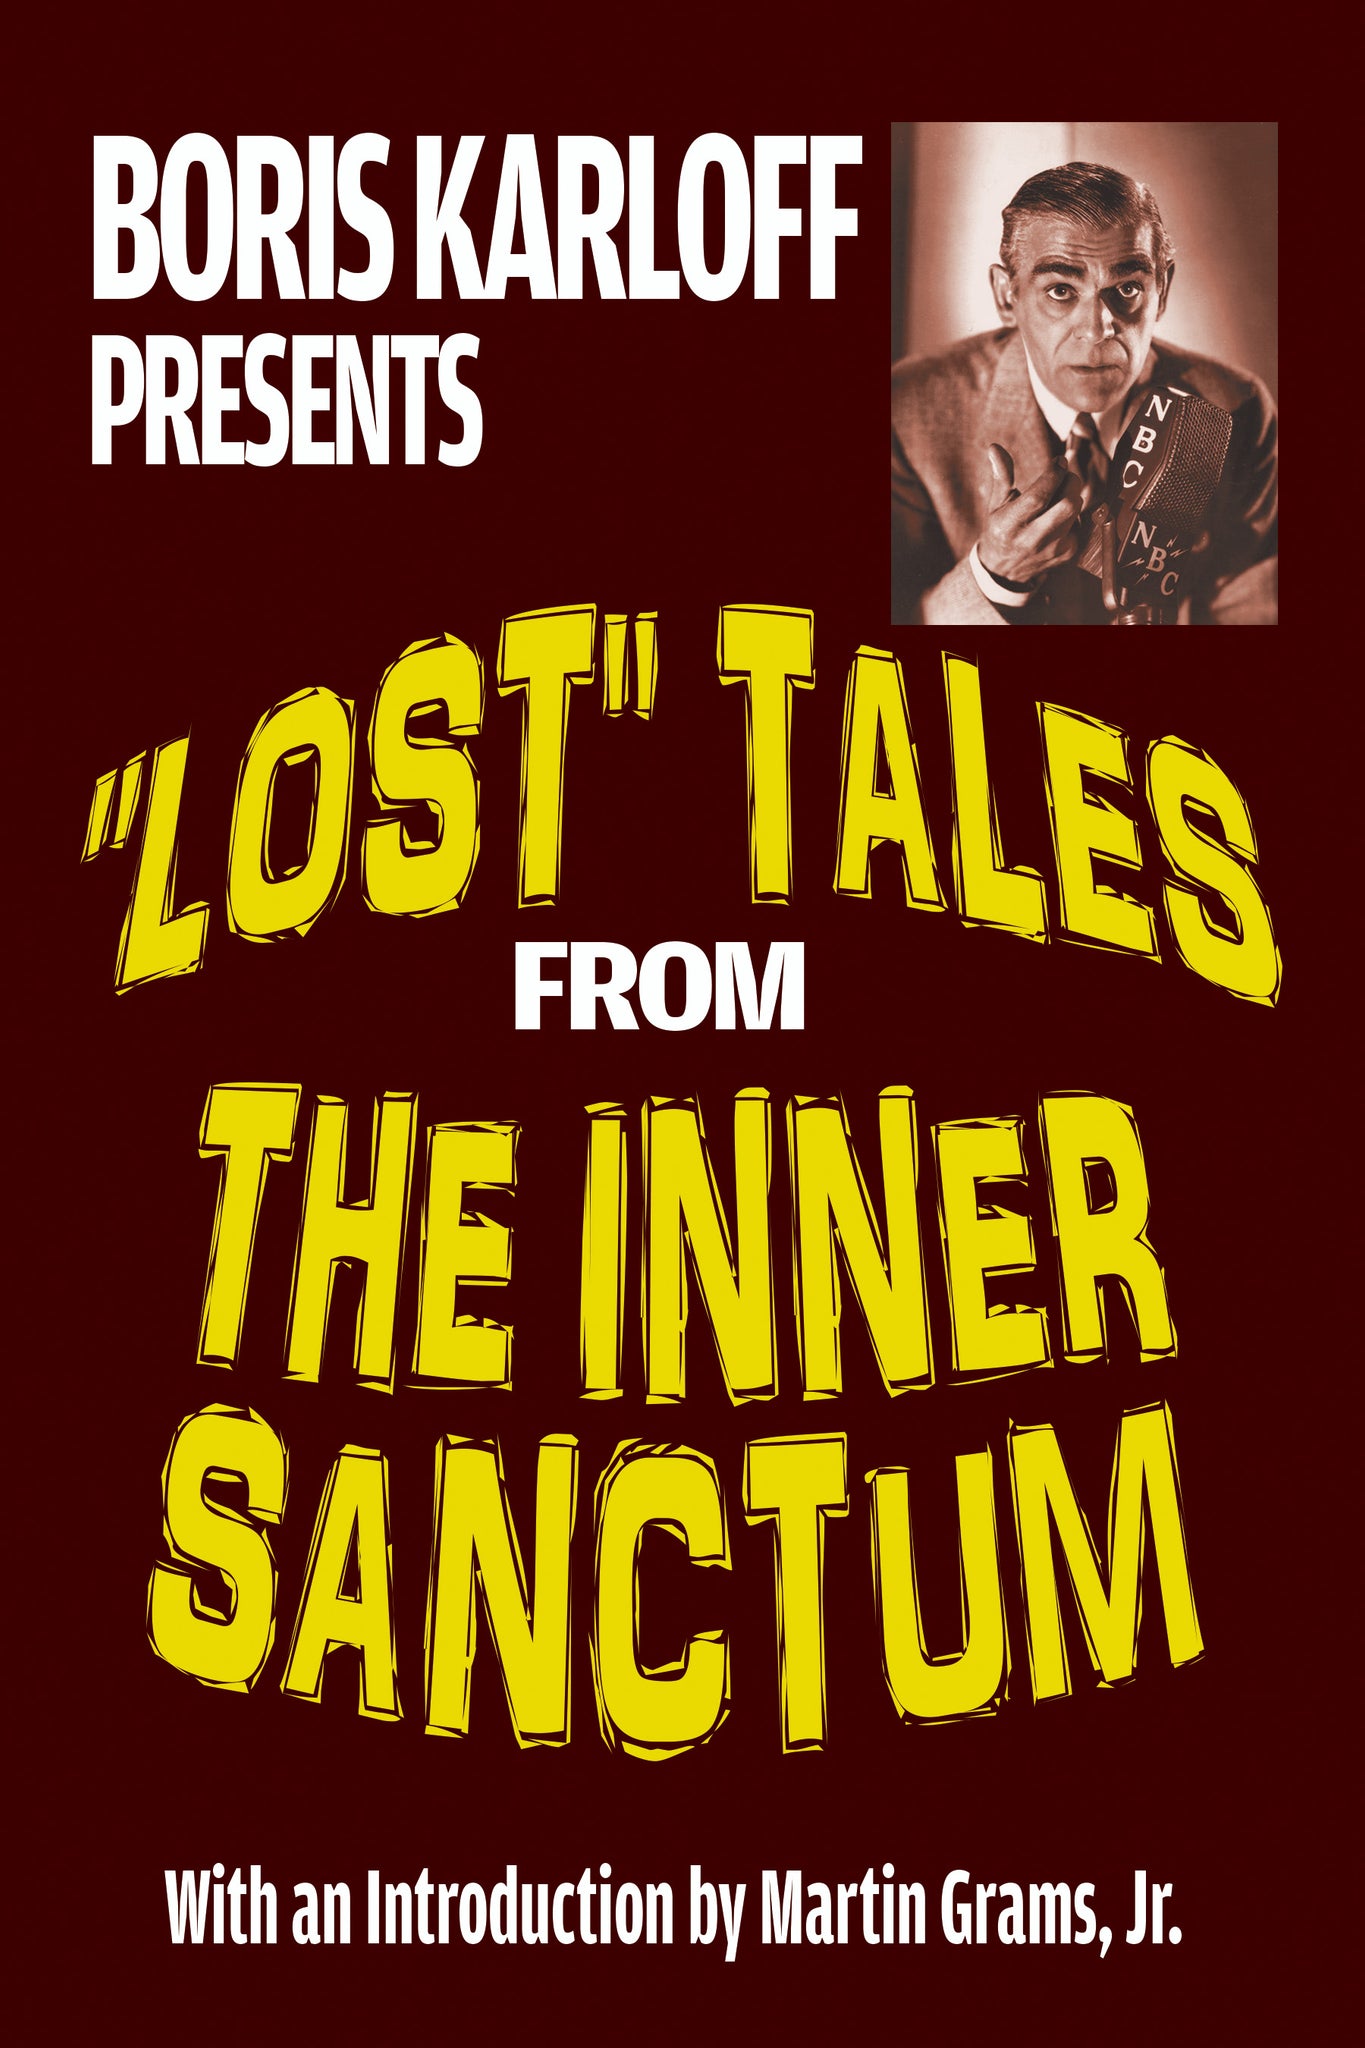 Boris Karloff Presents "Lost" Tales From The Inner Sanctum